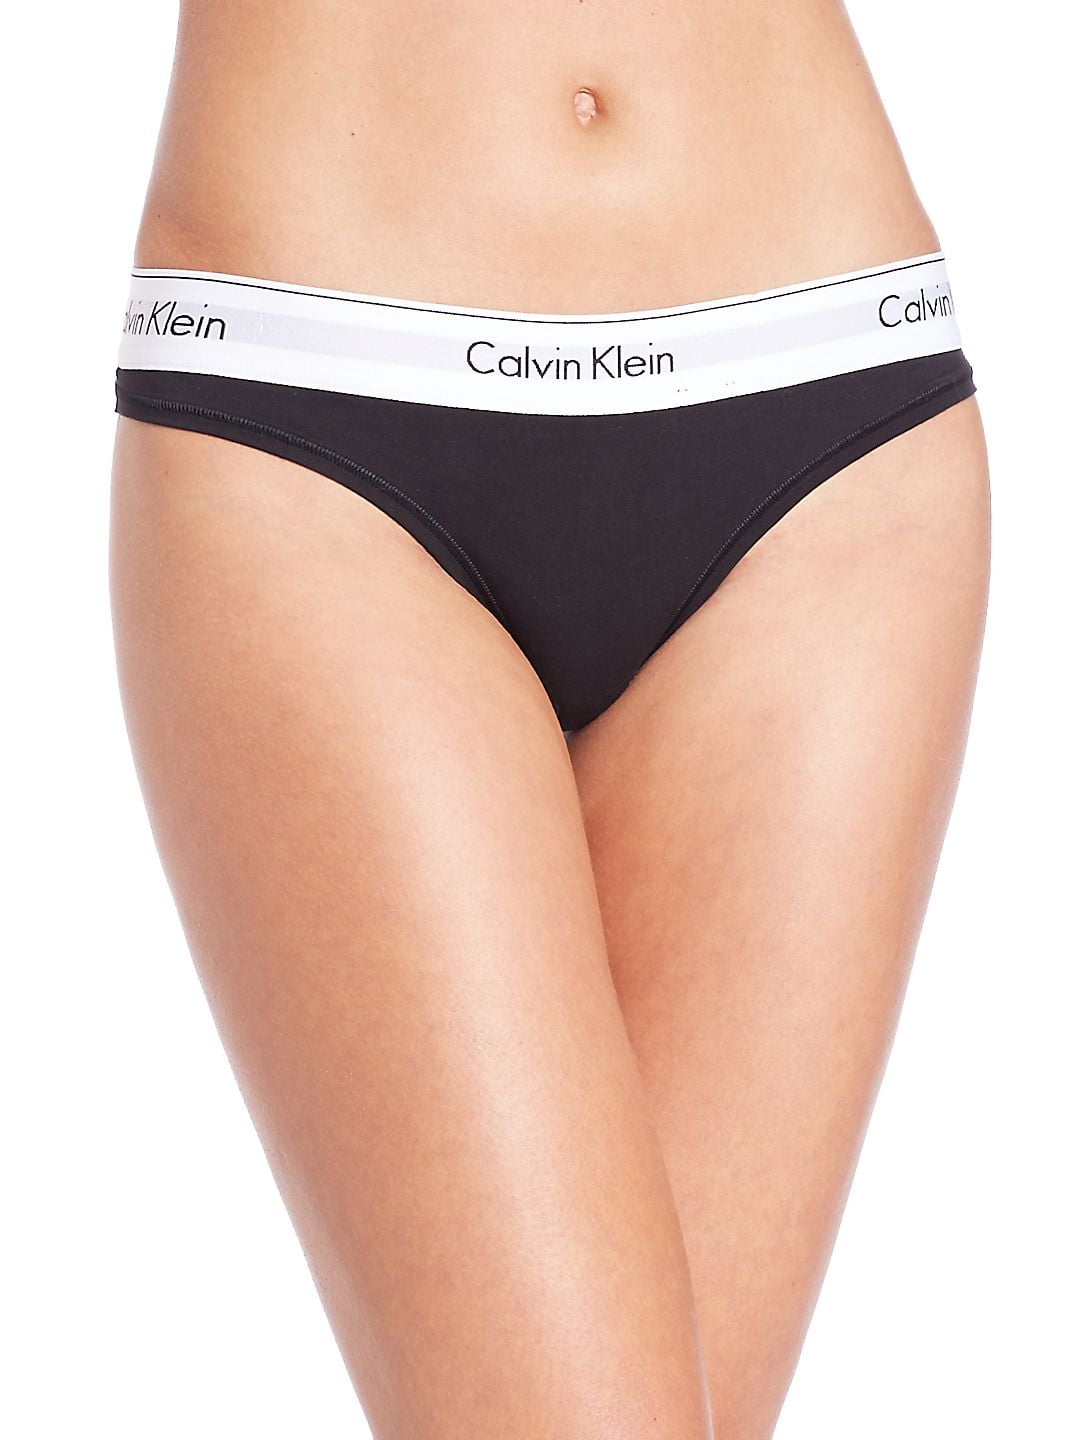 Calvin Klein Women's XS-XL Modern Cotton Thong Panty, Black